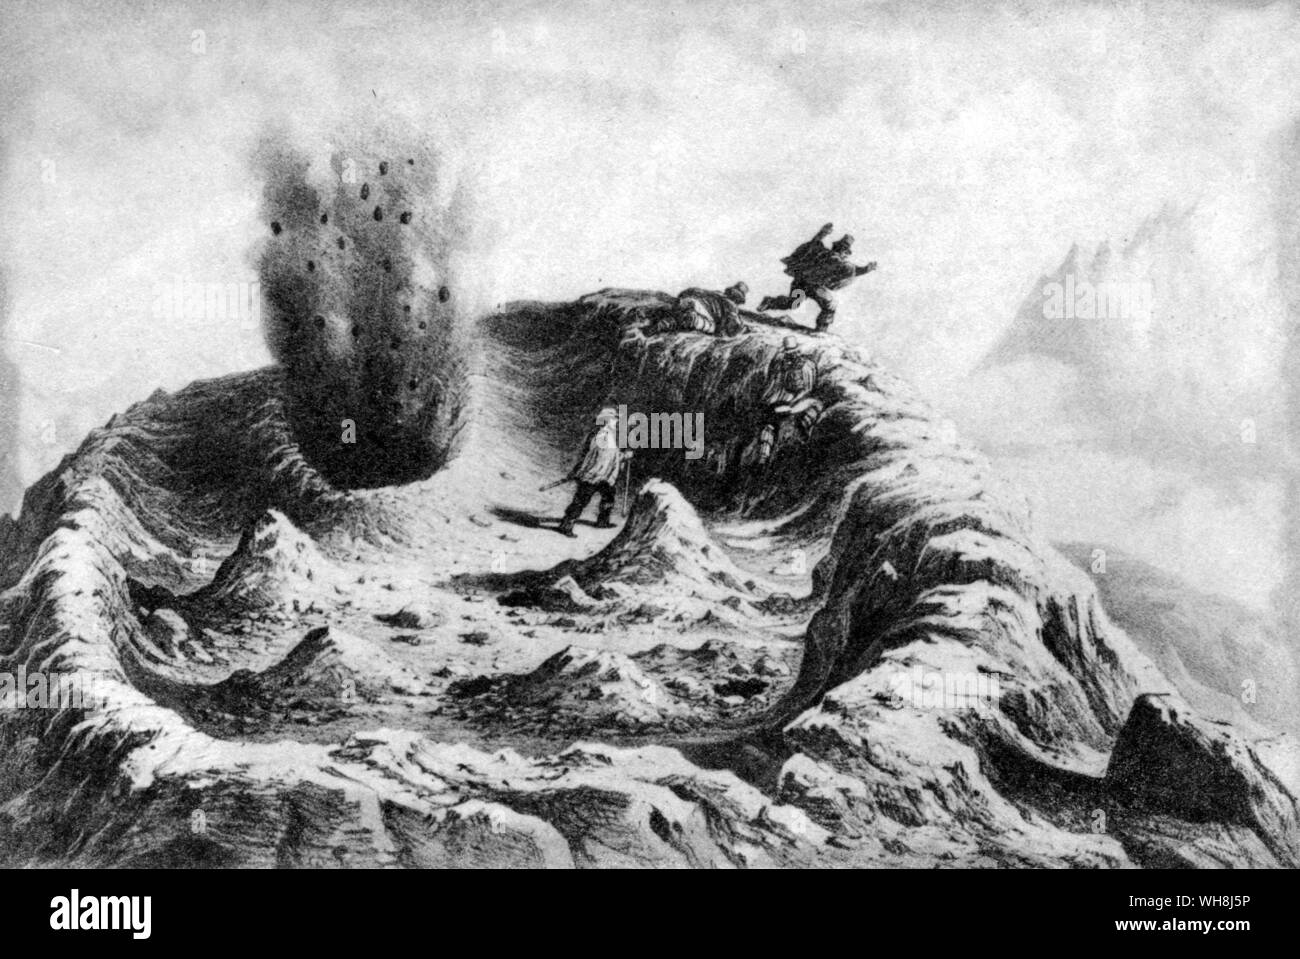 Der Krater des Vulkan Antuco am Beginn einer Eruption, 1854, von Pierre Frederic Lehnert. Darwin und der Beagle von Alan Moorhead, Seite 166. Stockfoto